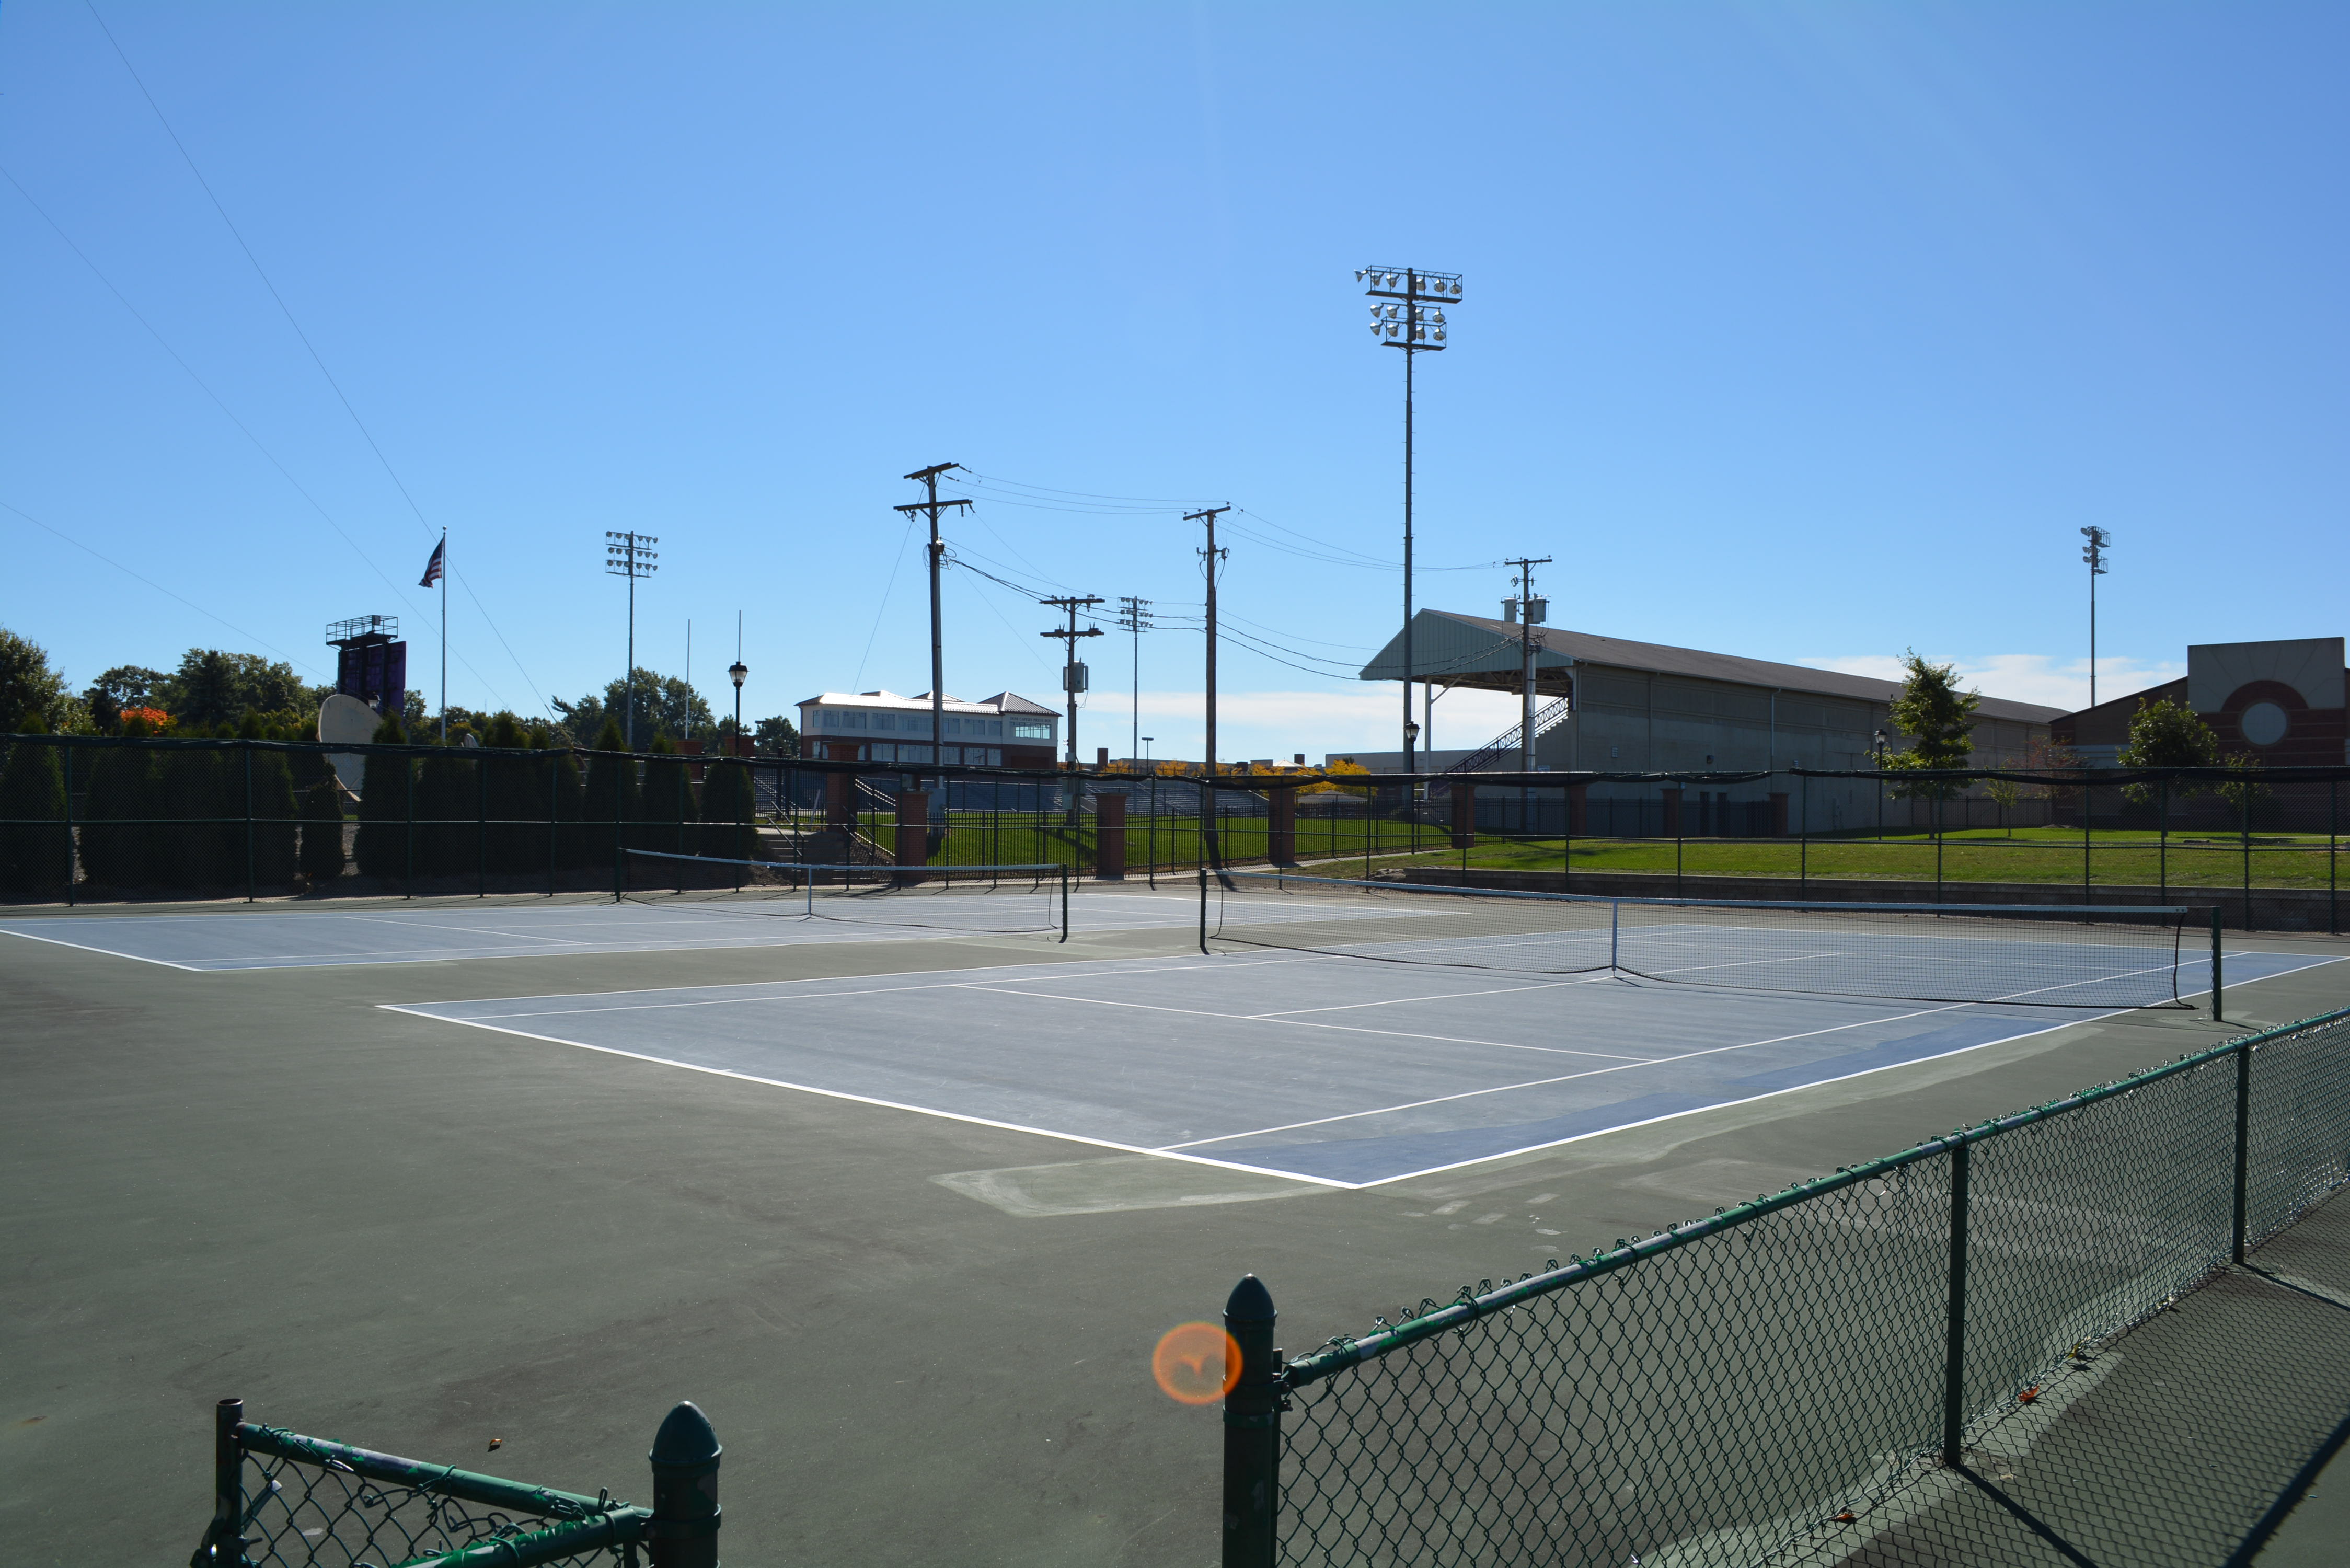 Whitehill Tennis Courts